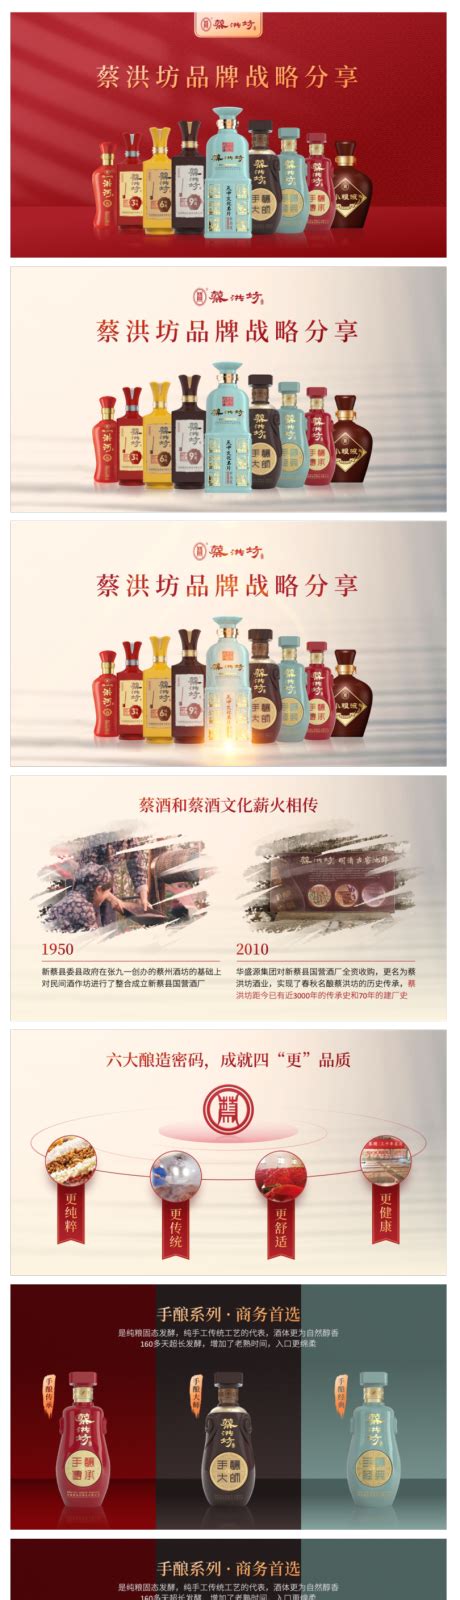 白酒品牌概念营销方案PPT广告设计素材海报模板免费下载-享设计